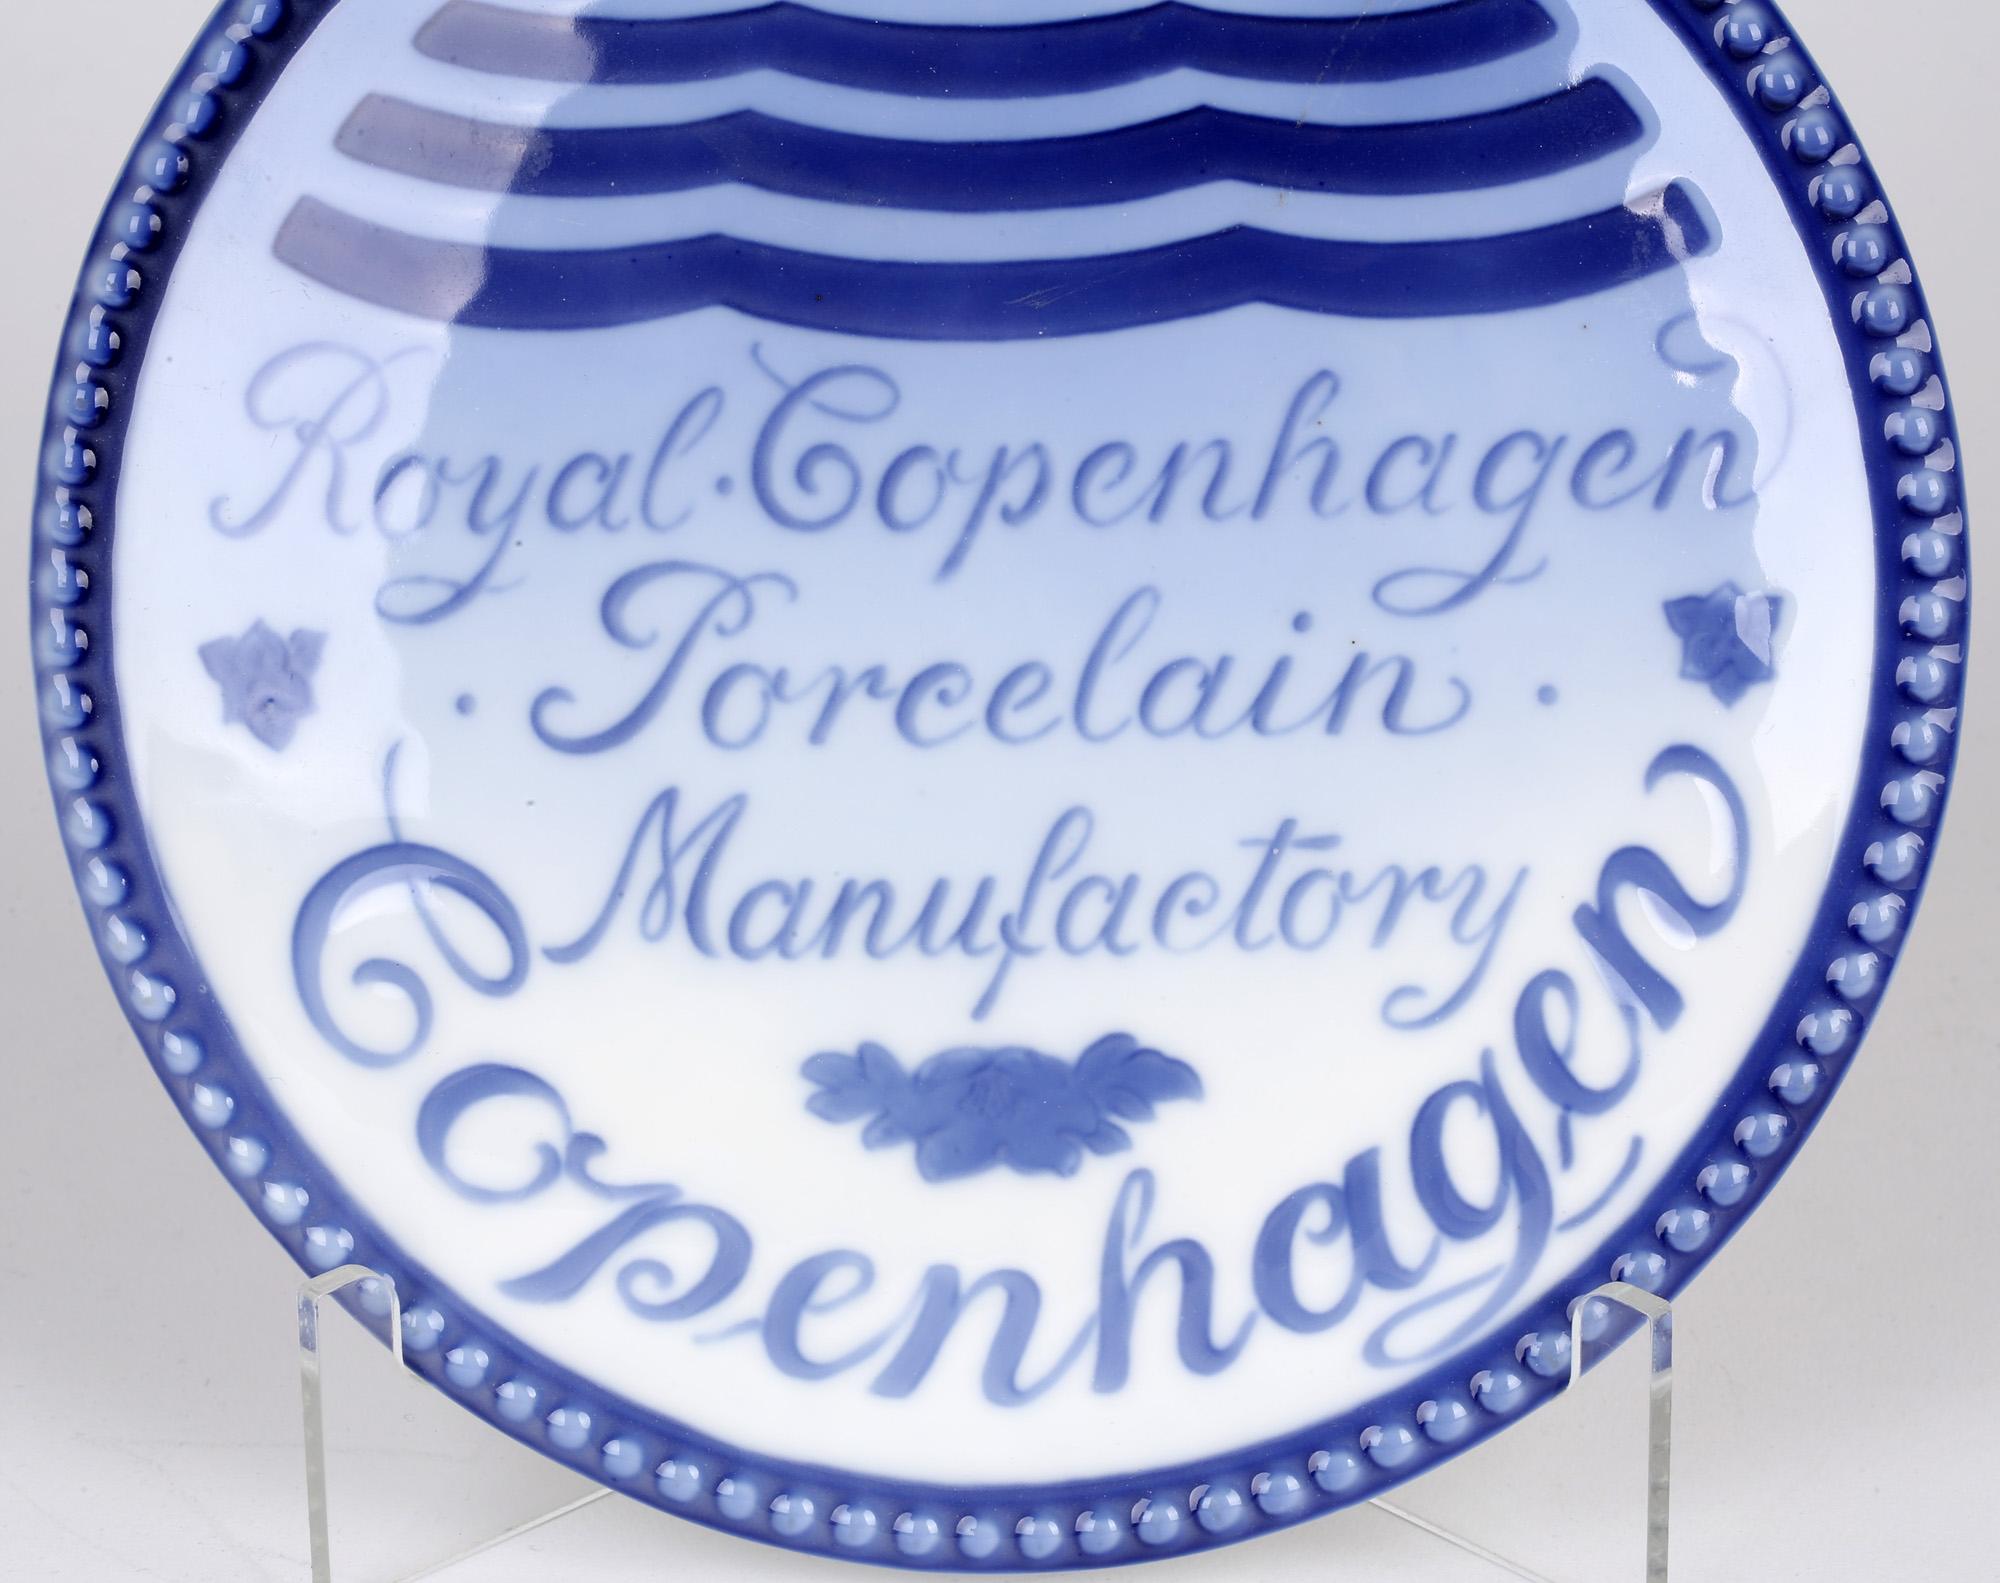 Royal Copenhagen Porcelain Manufactory Advertising Plaque 3